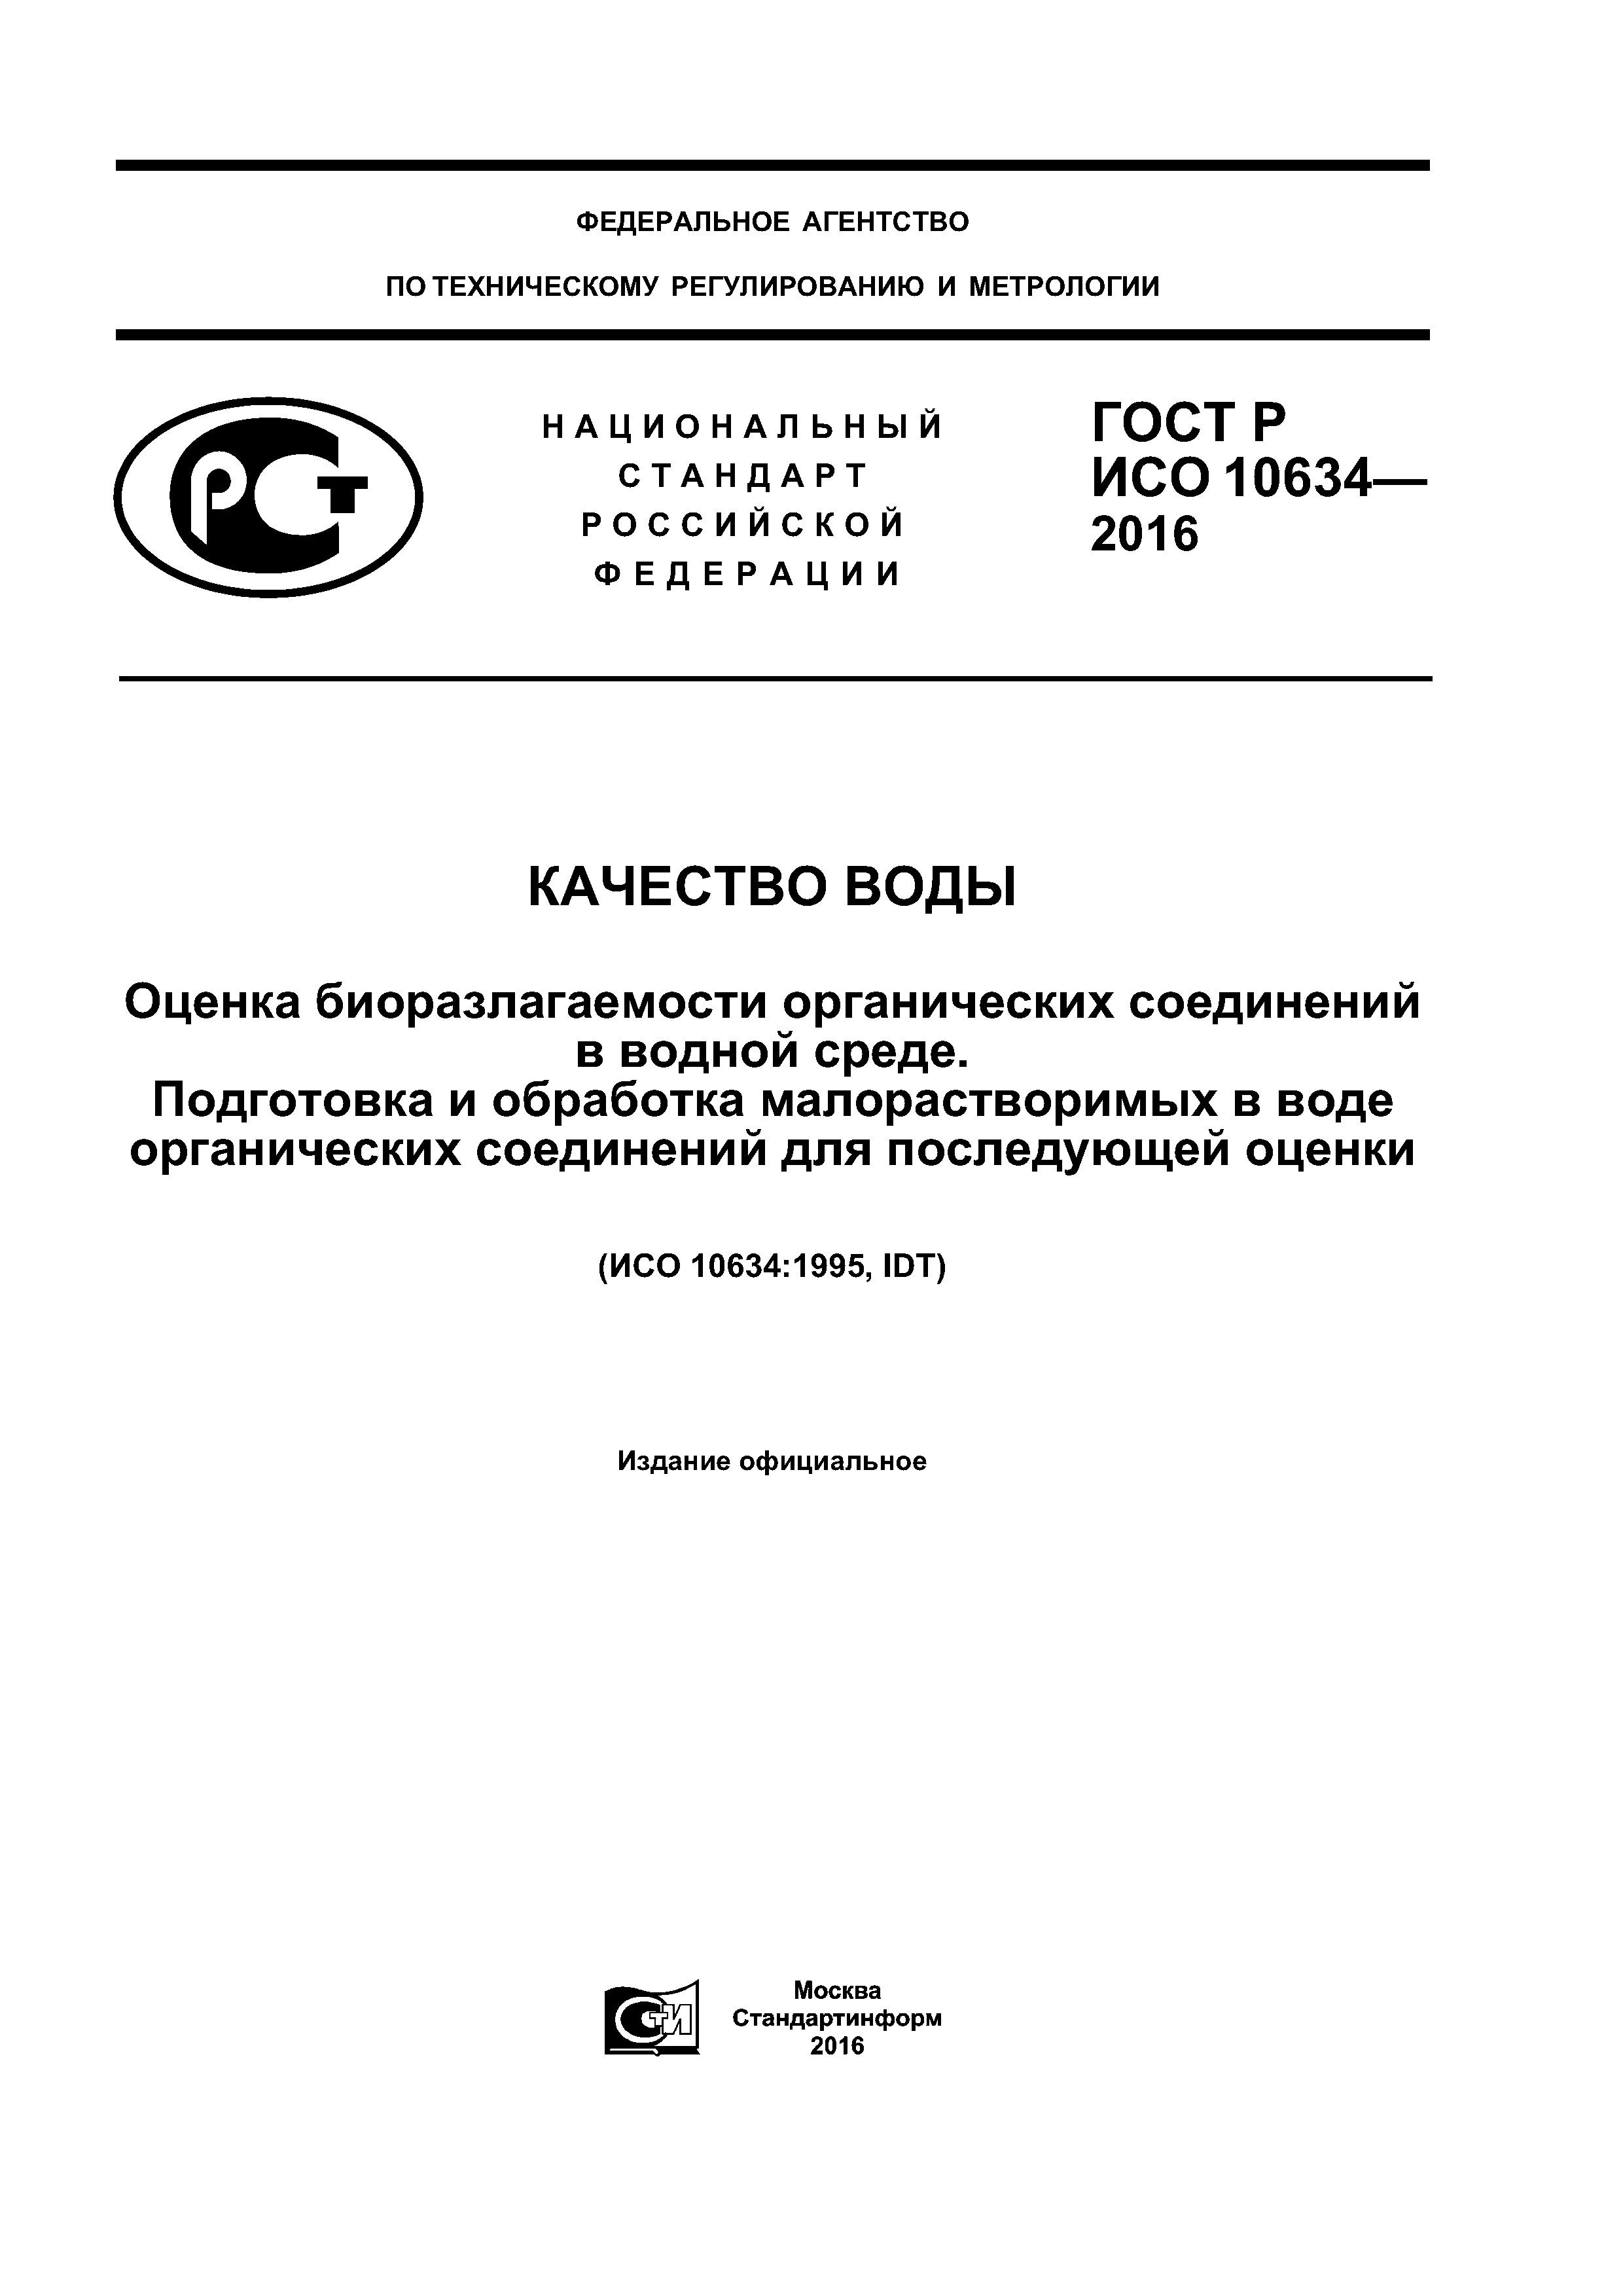 ГОСТ Р ИСО 10634-2016